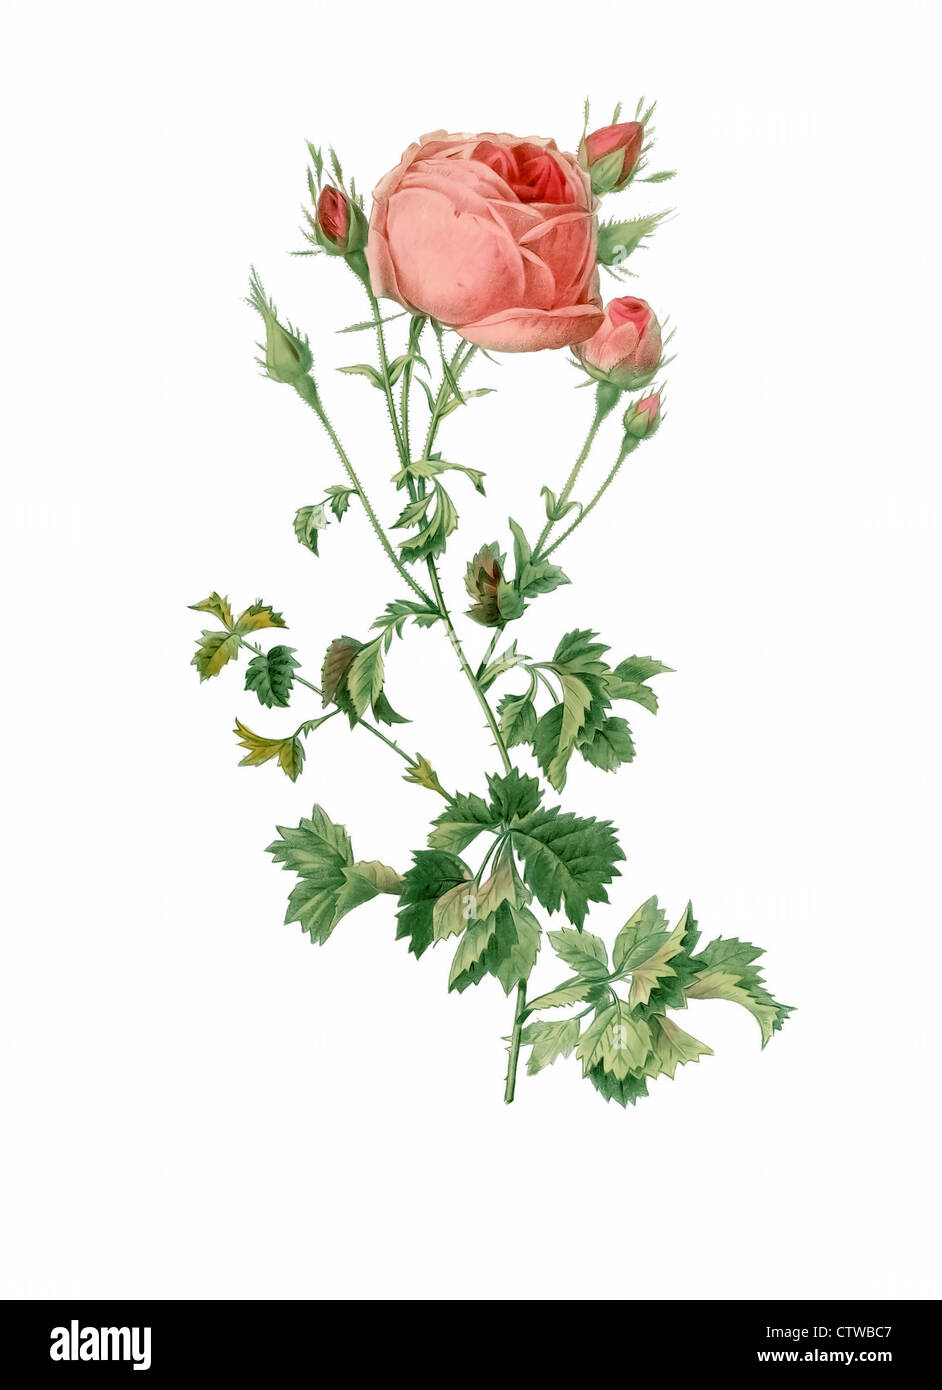 Illustrazione di rosa centifolia bipinnata, sedano-lasciava in varietà di cavolo cappuccio rosa o rose de mai o provence rose Foto Stock